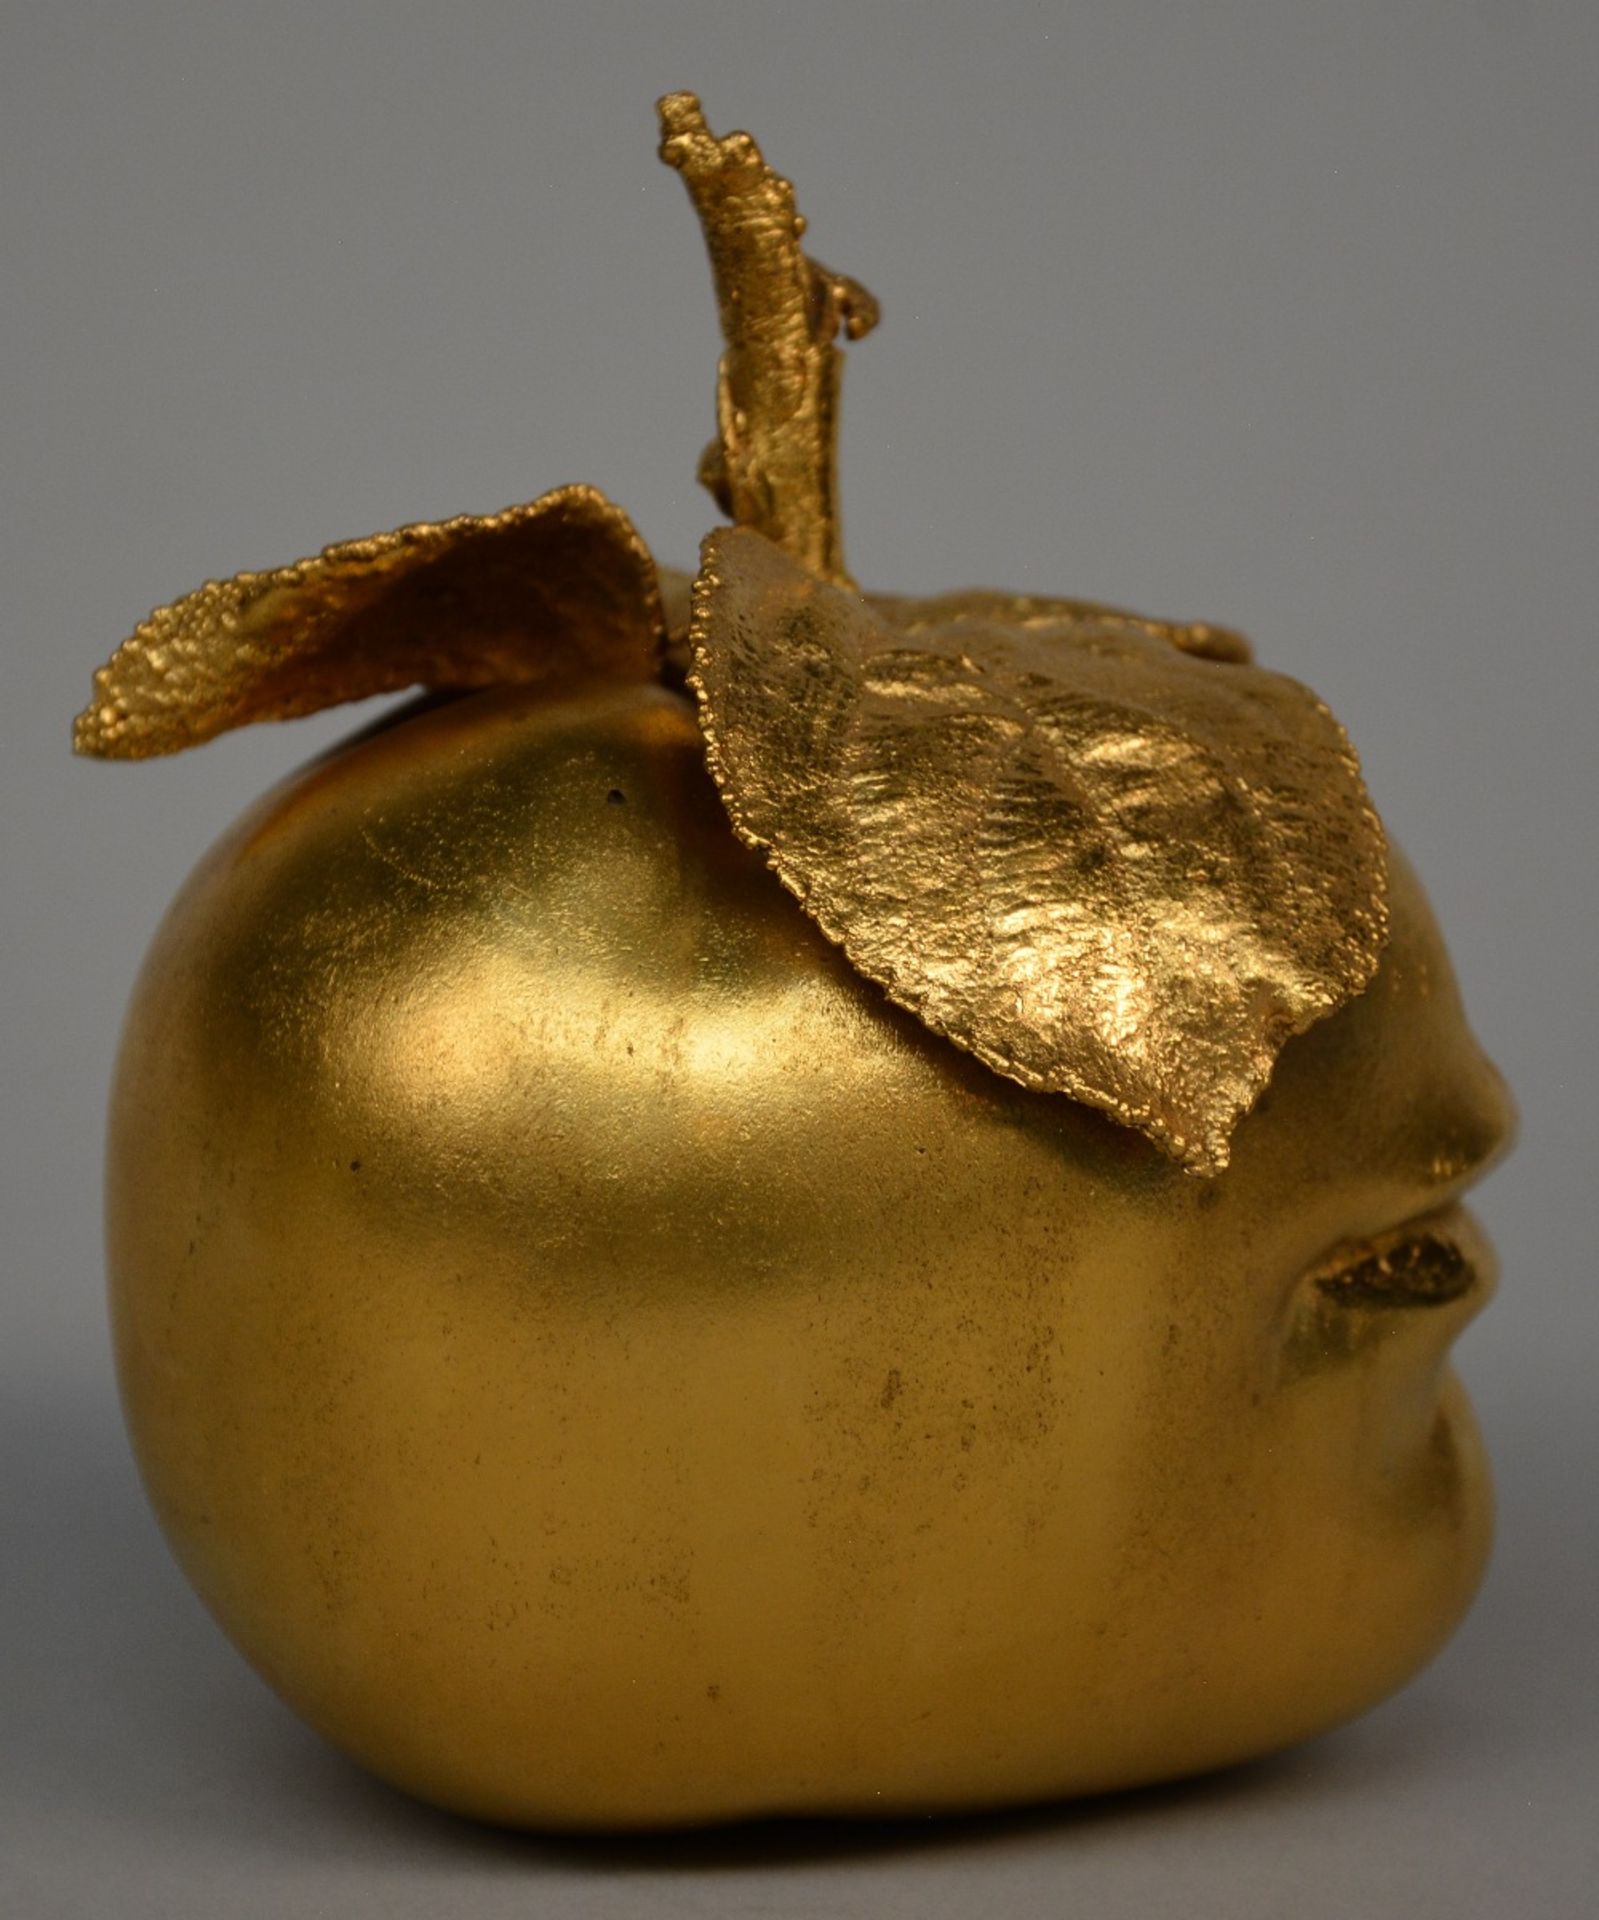 Lalanne C., "pomme bouche", gilt bronze sculpture, signed Lalanne - Artcurial 233/250, H 14 cm - Bild 4 aus 7